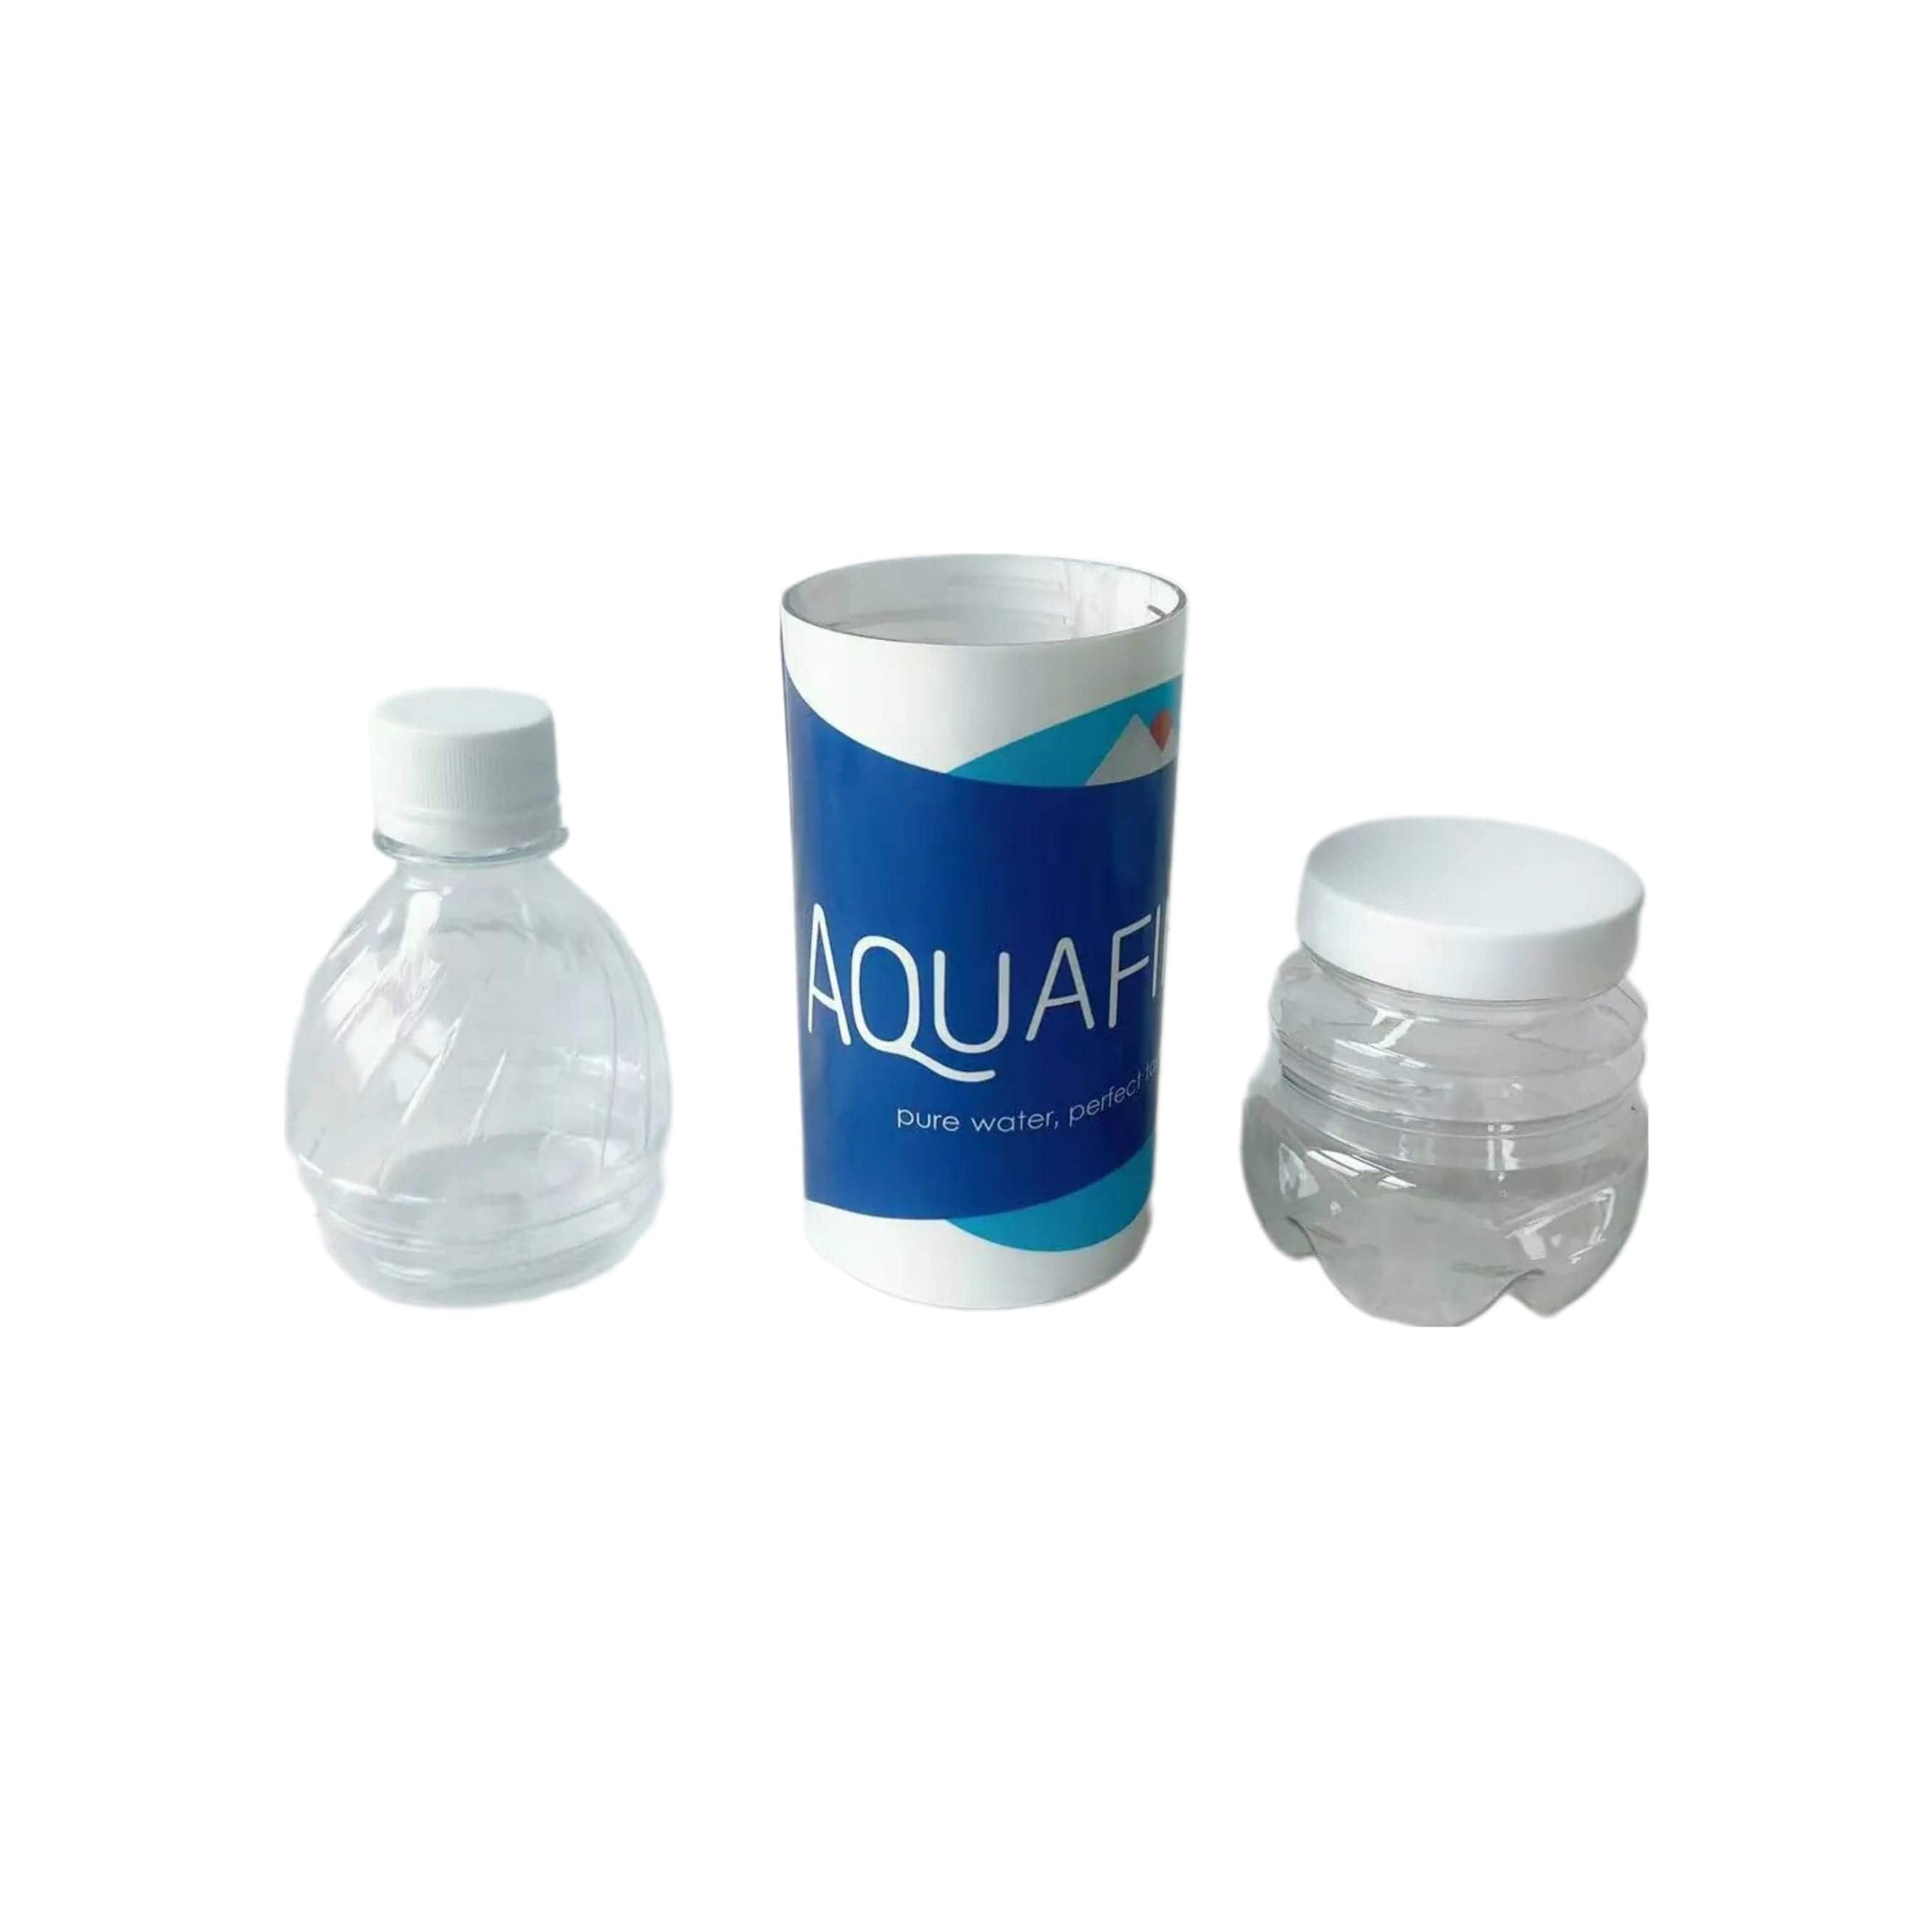 Wasserflasche mit Versteck / Aquafina